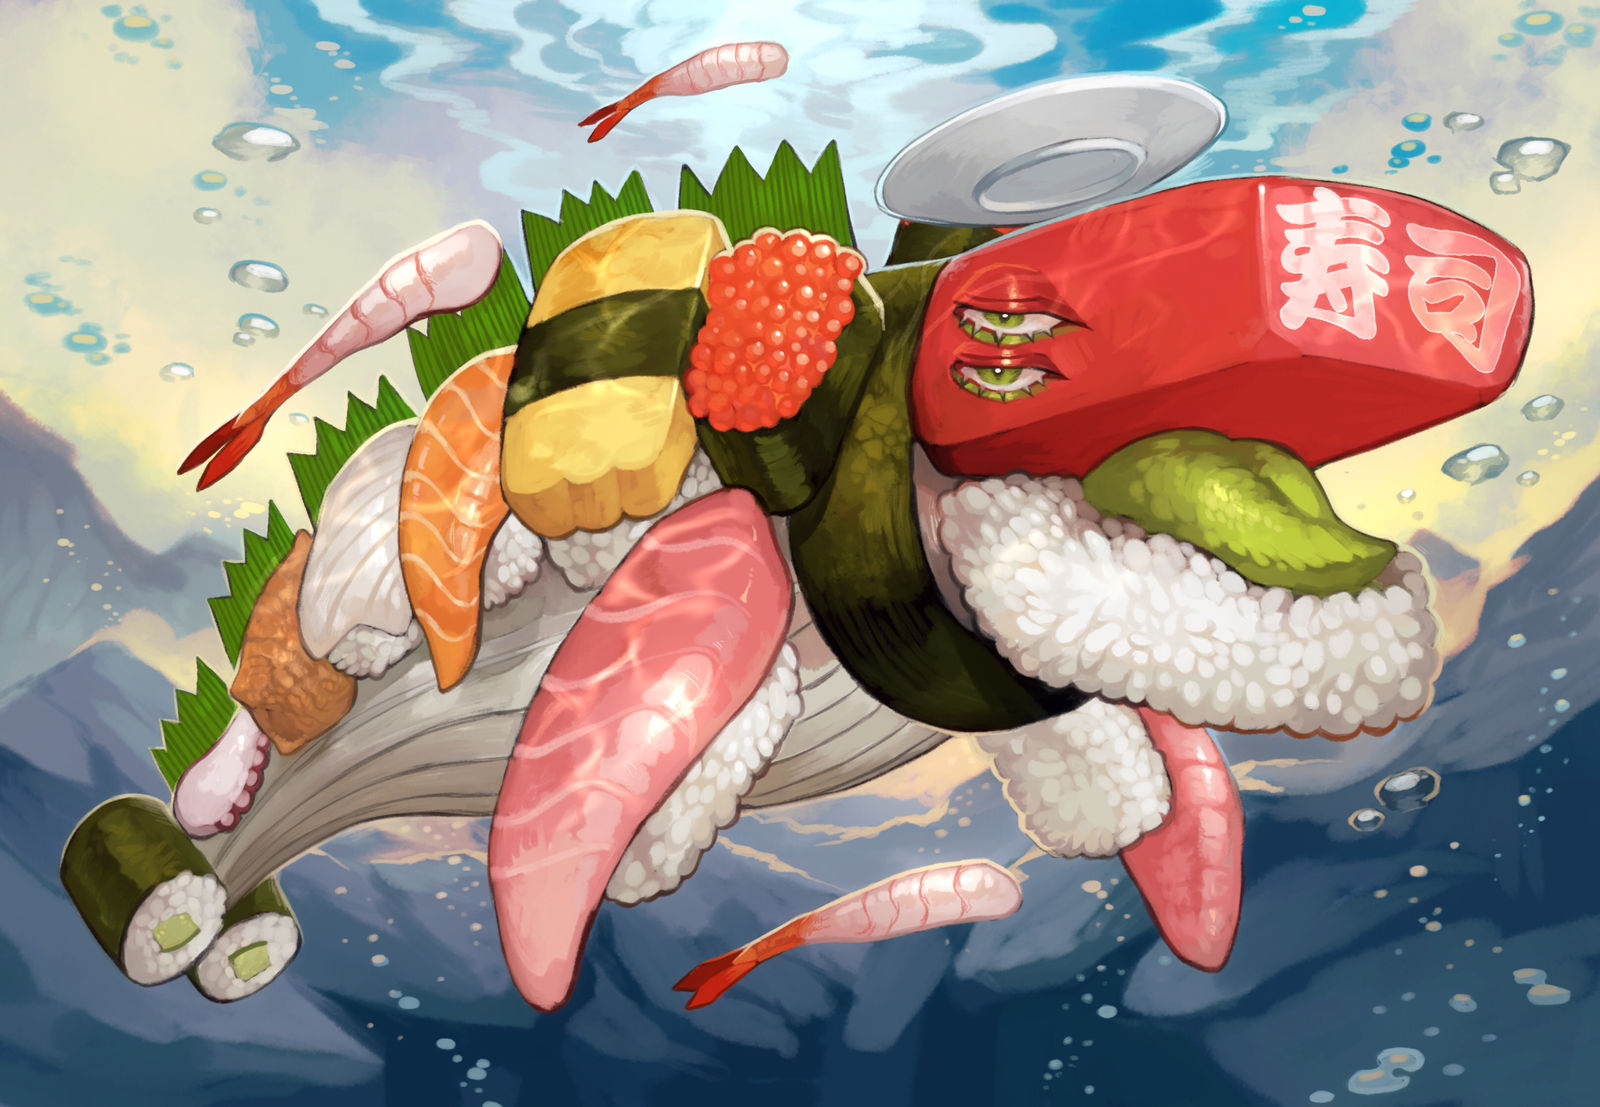 寿司鲸鱼插画图片壁纸